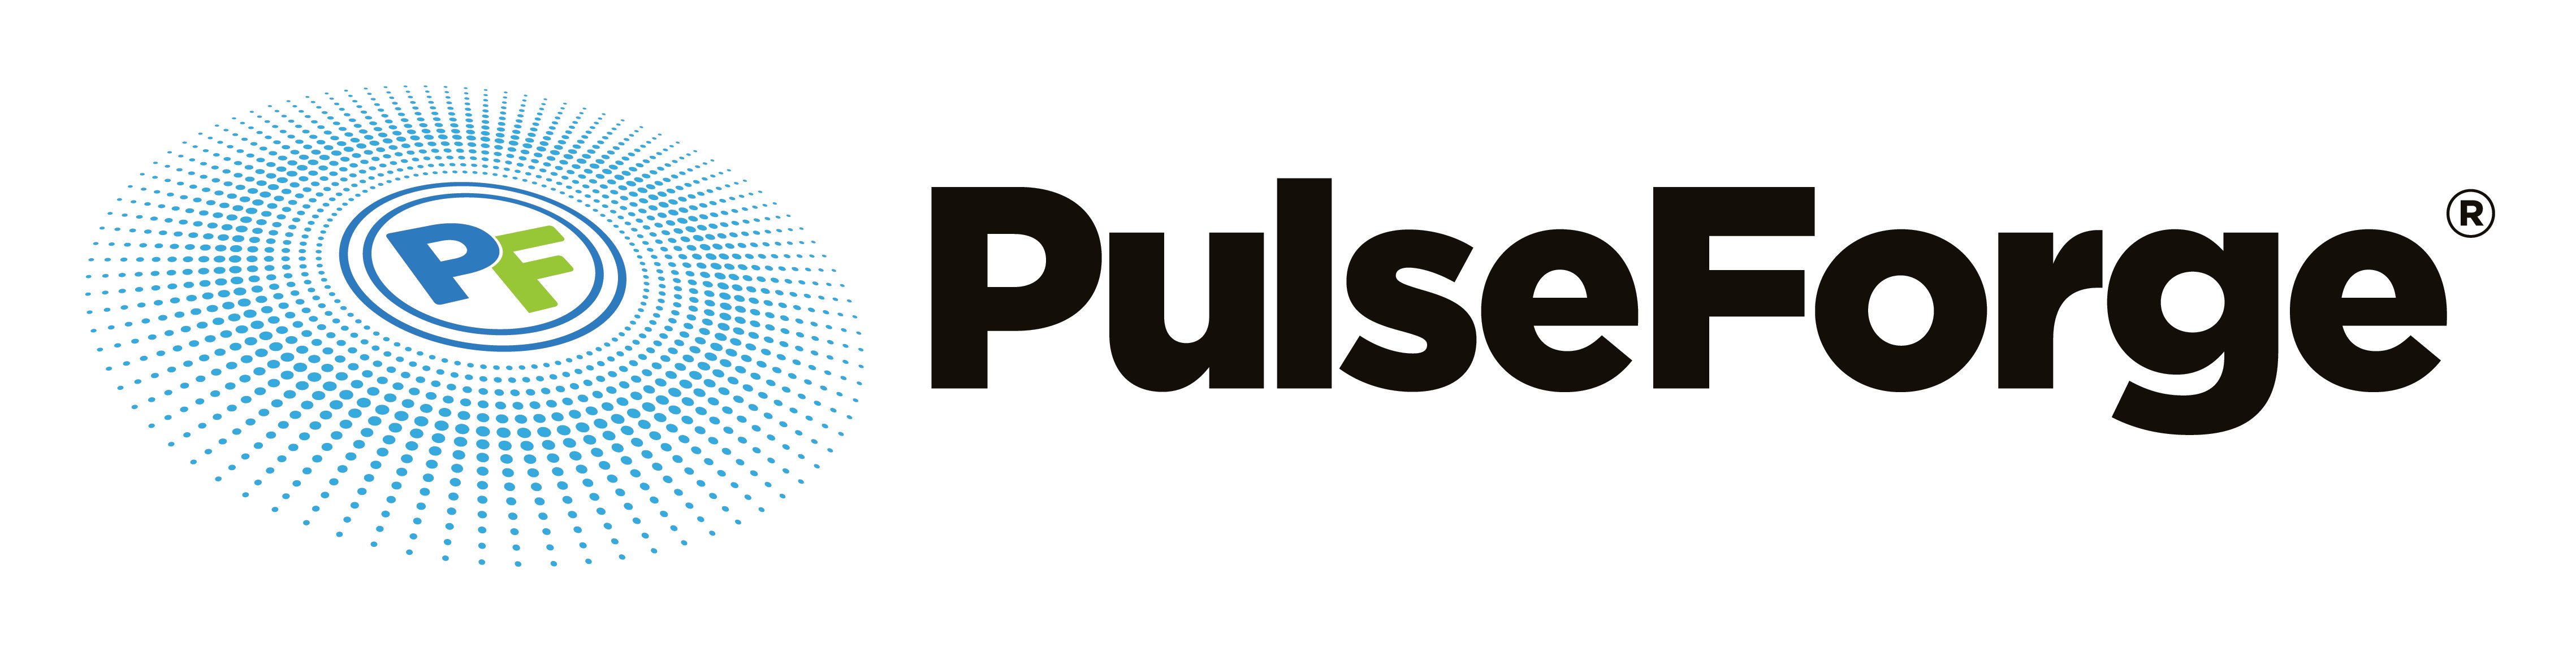 PulseForge_logo_plain_4x_BoW[3]